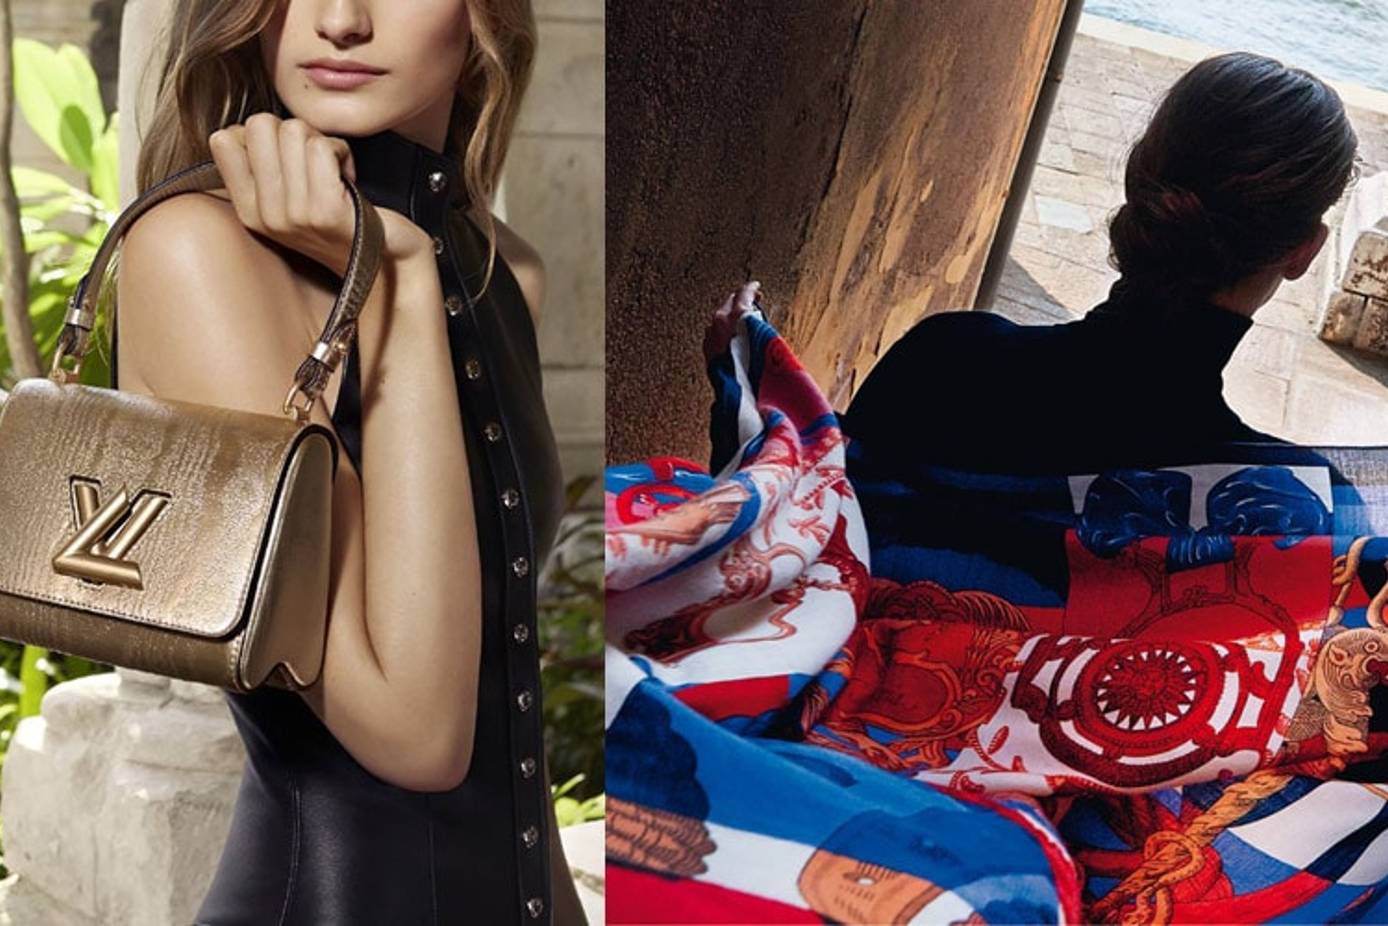 Louis Vuitton: el día que la marca de lujo no reconoció sus